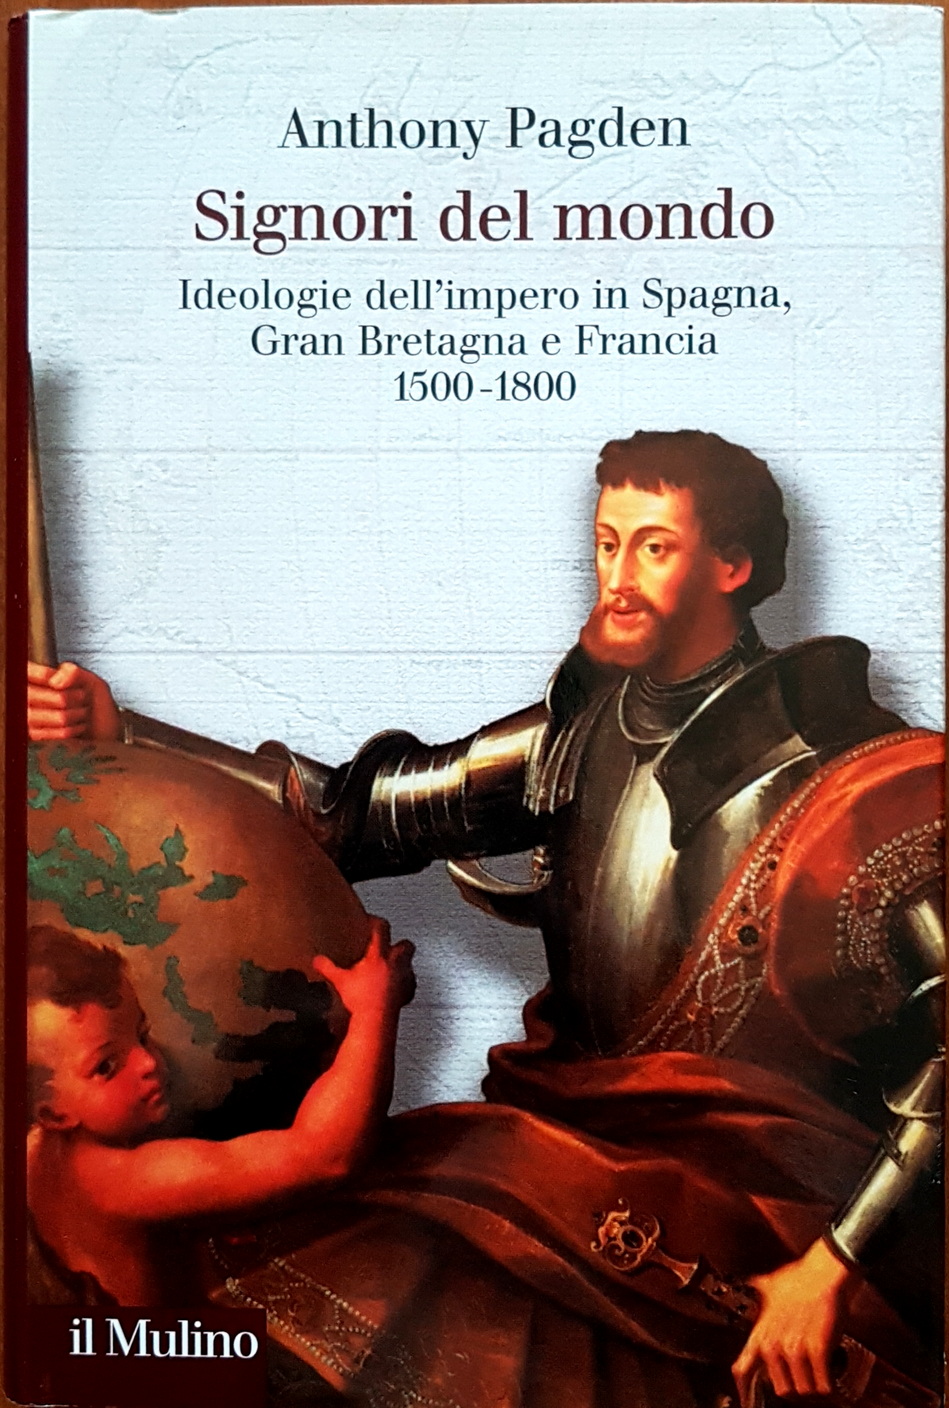 Anthony Pagden, Signori del mondo. Ideologie dell’impero in Spagna, Gran Bretagna e Francia [1500-1800], Ed. il Mulino, 2005